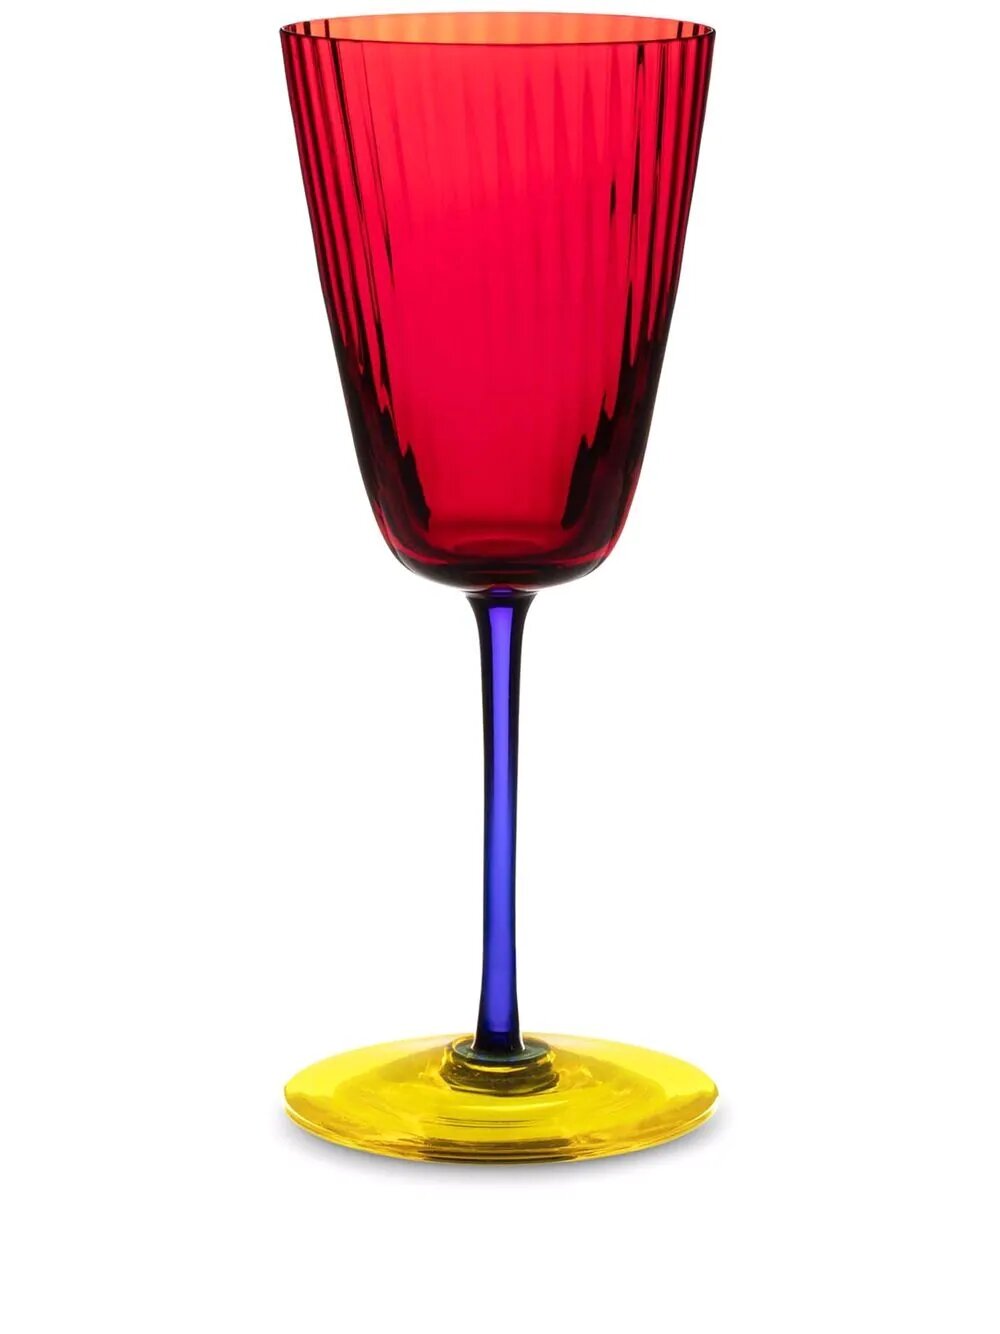 Бокал для вина в стиле колорблок Dolce amp Gabbana красный 33 423 руб.